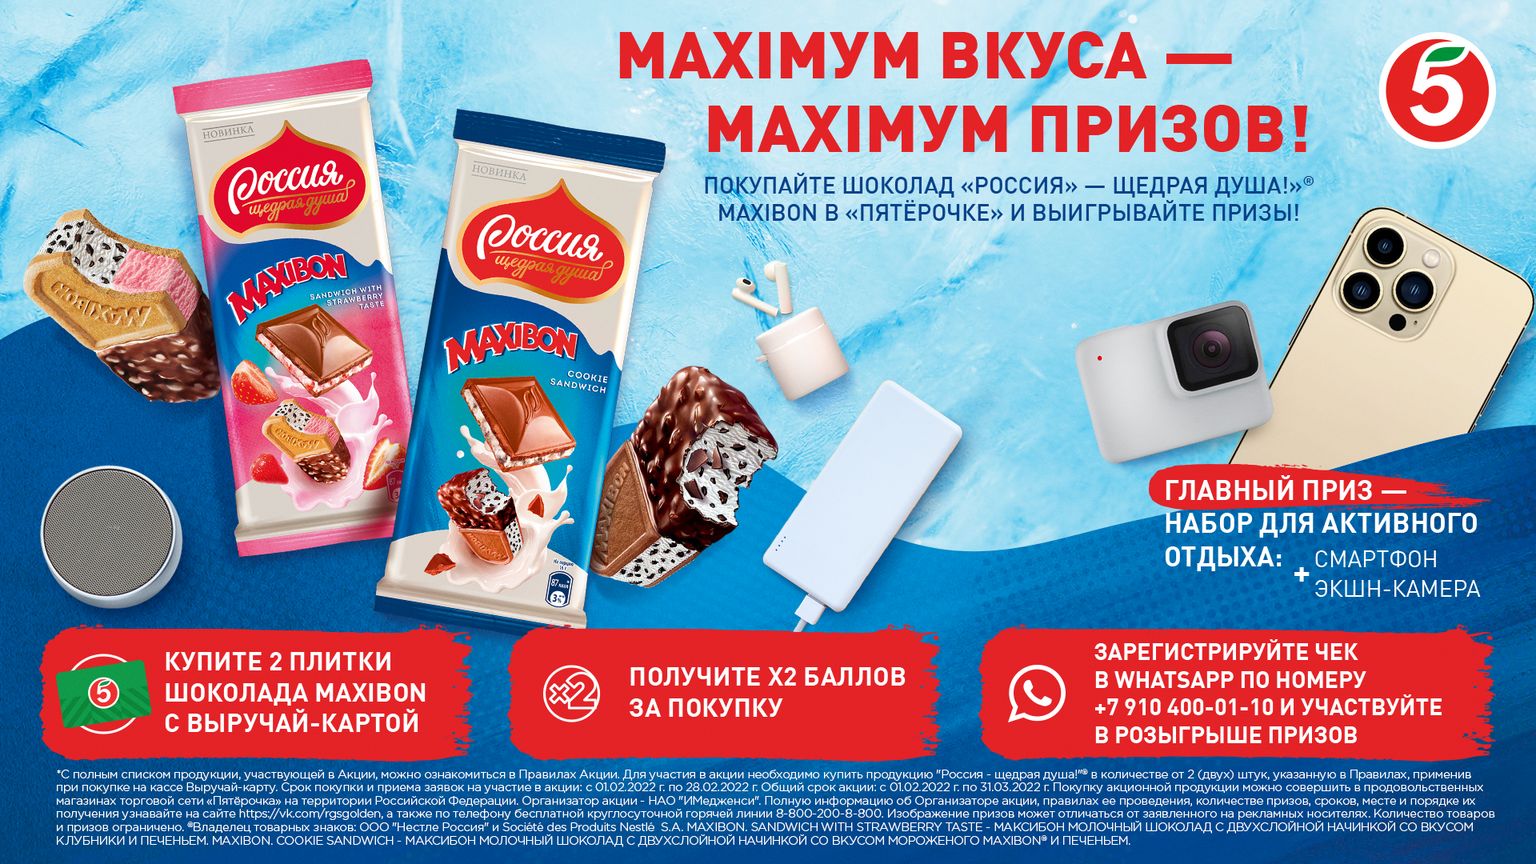 Шоколадка Maxibon Россия щедрая